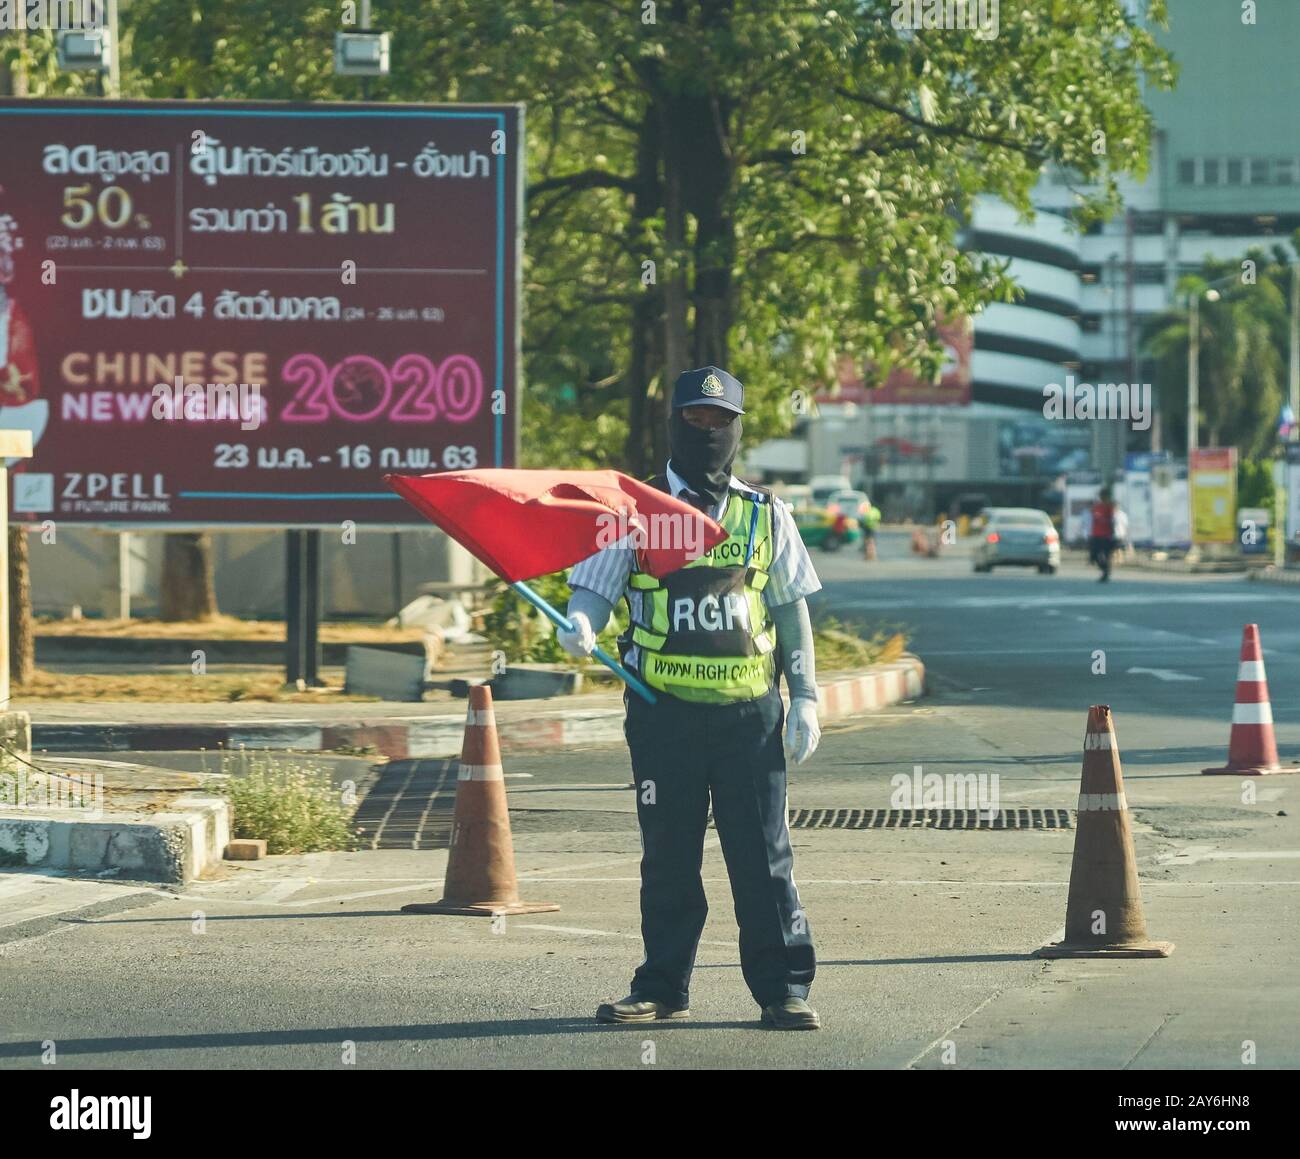 Un garde de sécurité avec un drapeau rouge, portant un masque facial, devant un panneau d'affichage chinois du nouvel an. Banque D'Images